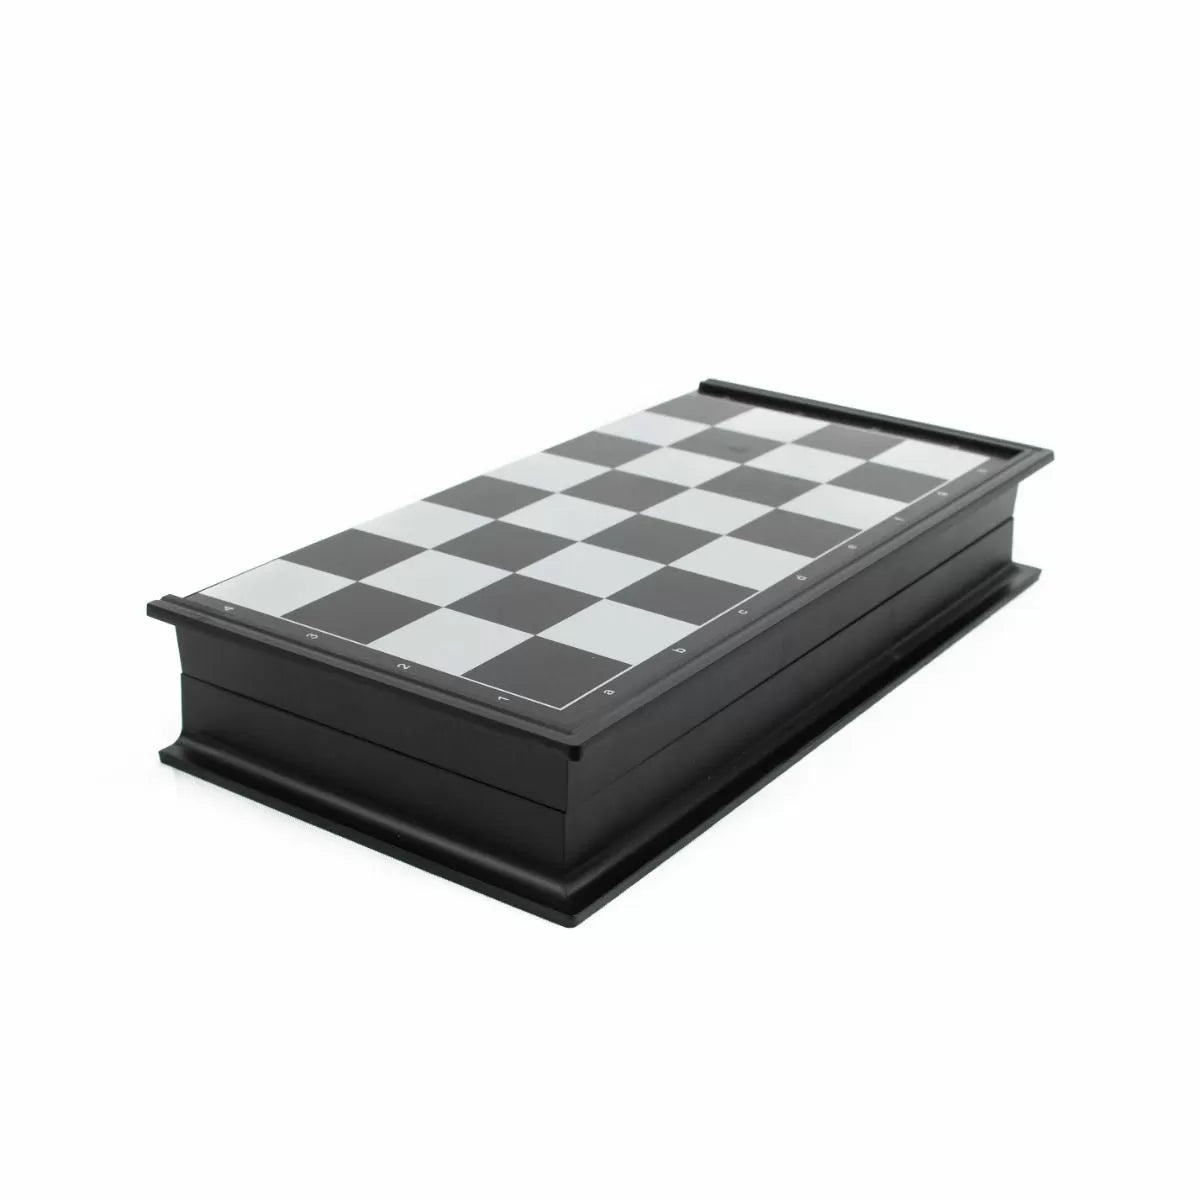 LPG Plastic Magnetic Travel Chess Set